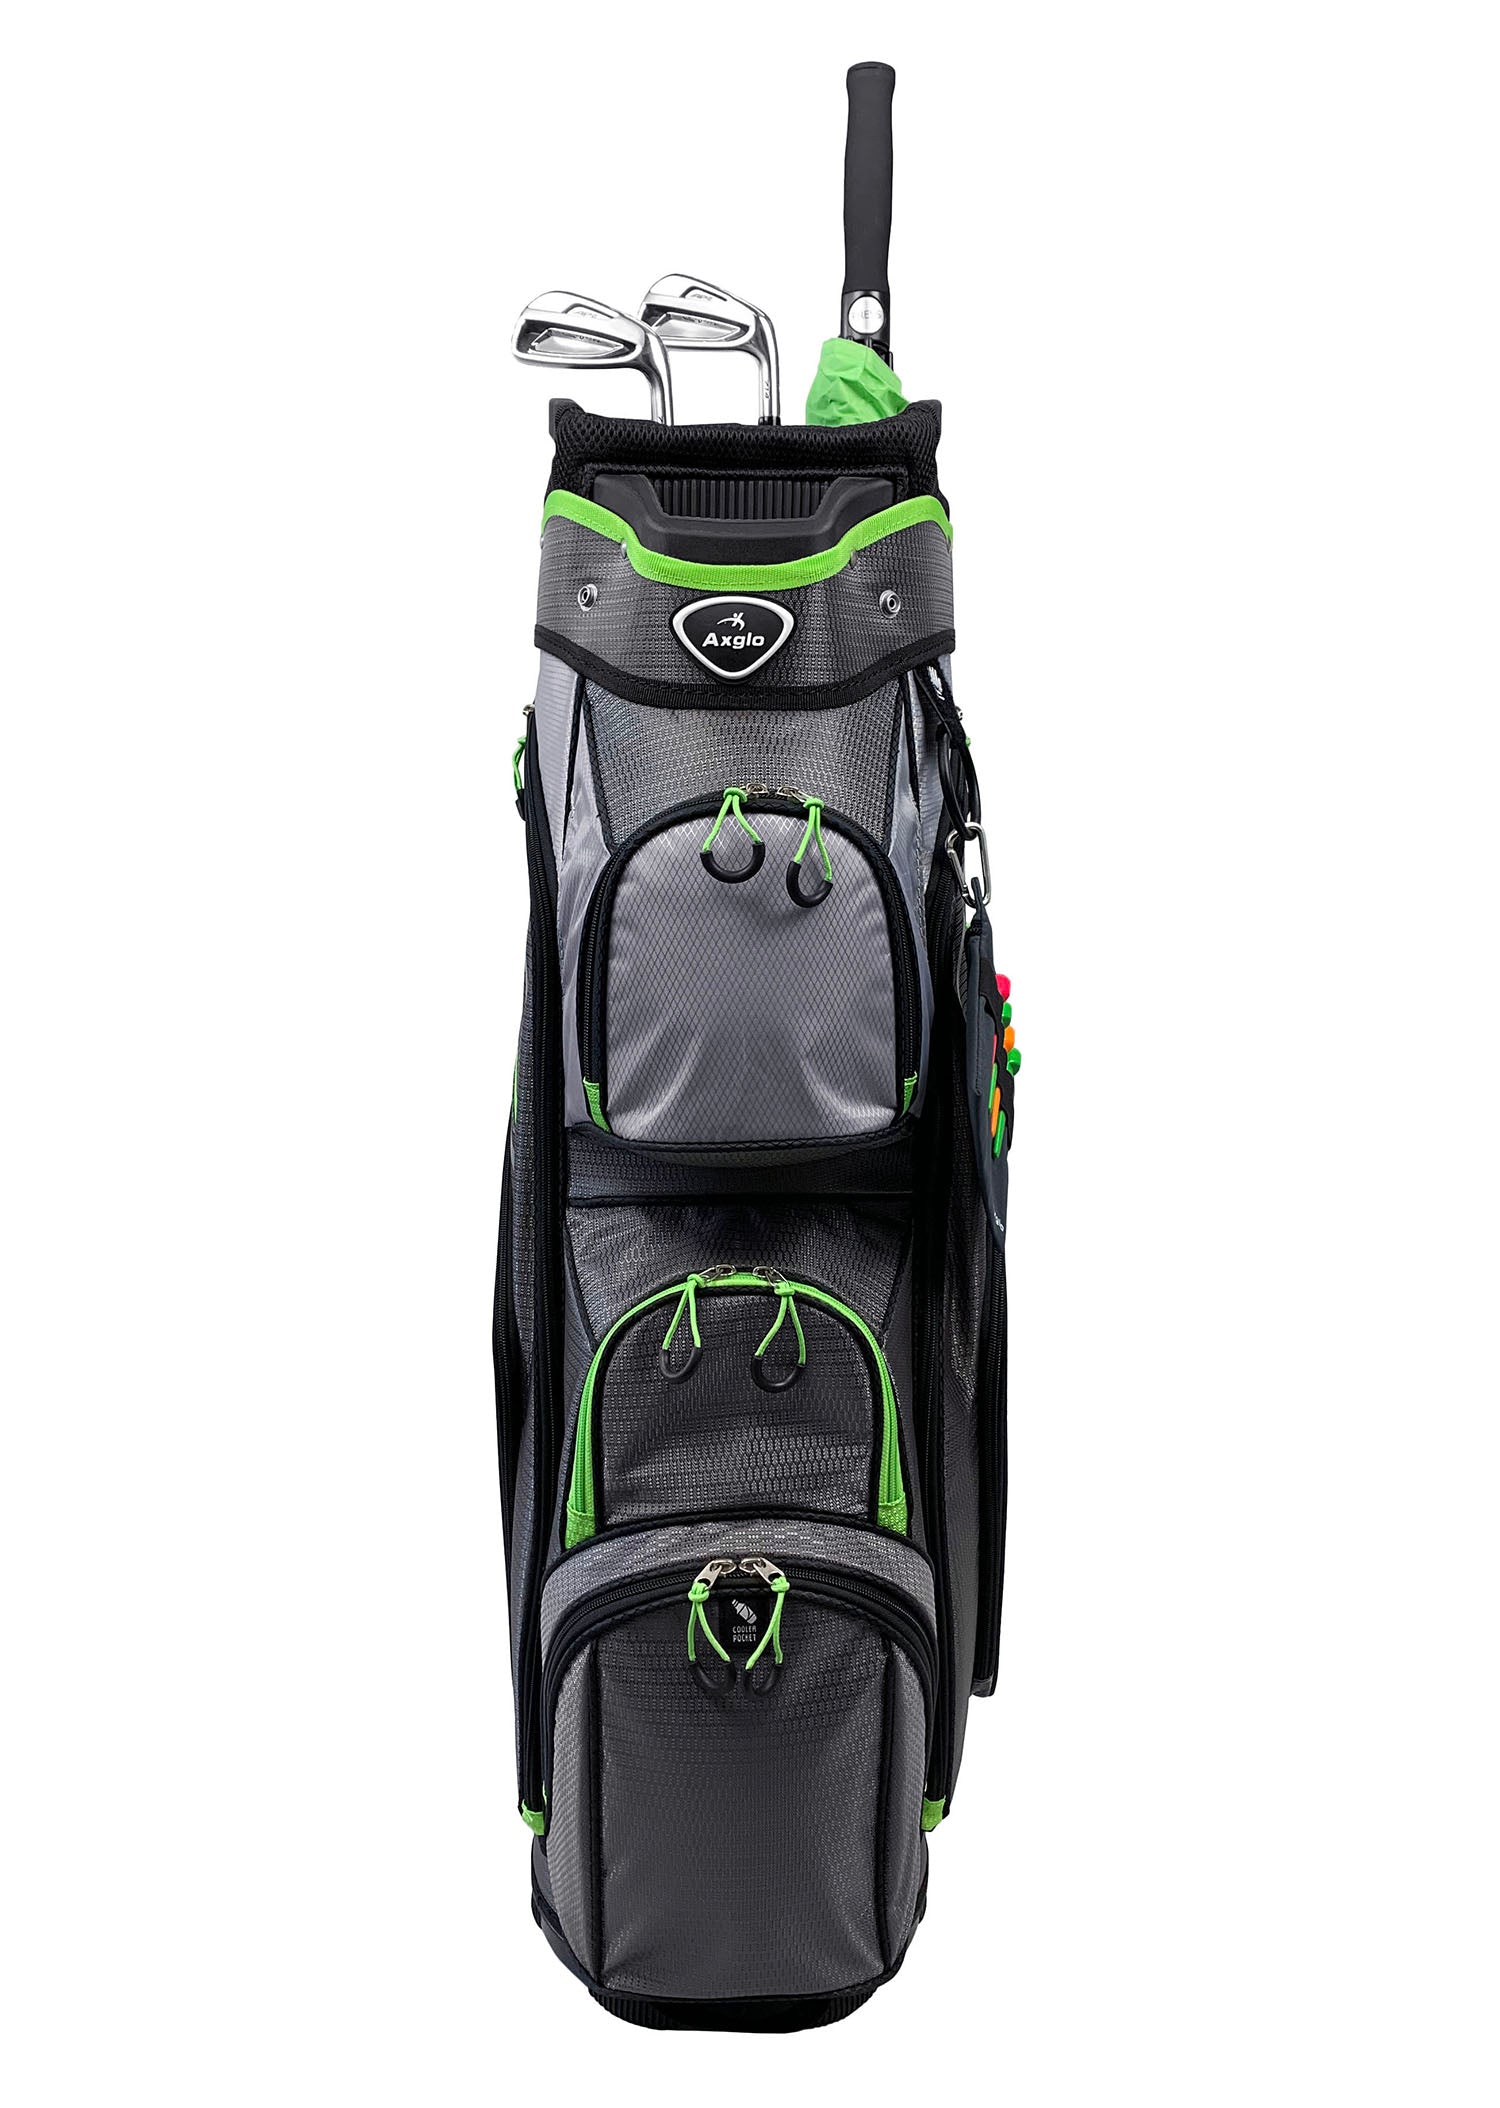 Axglo Golf Cart Bag - Green/Grey